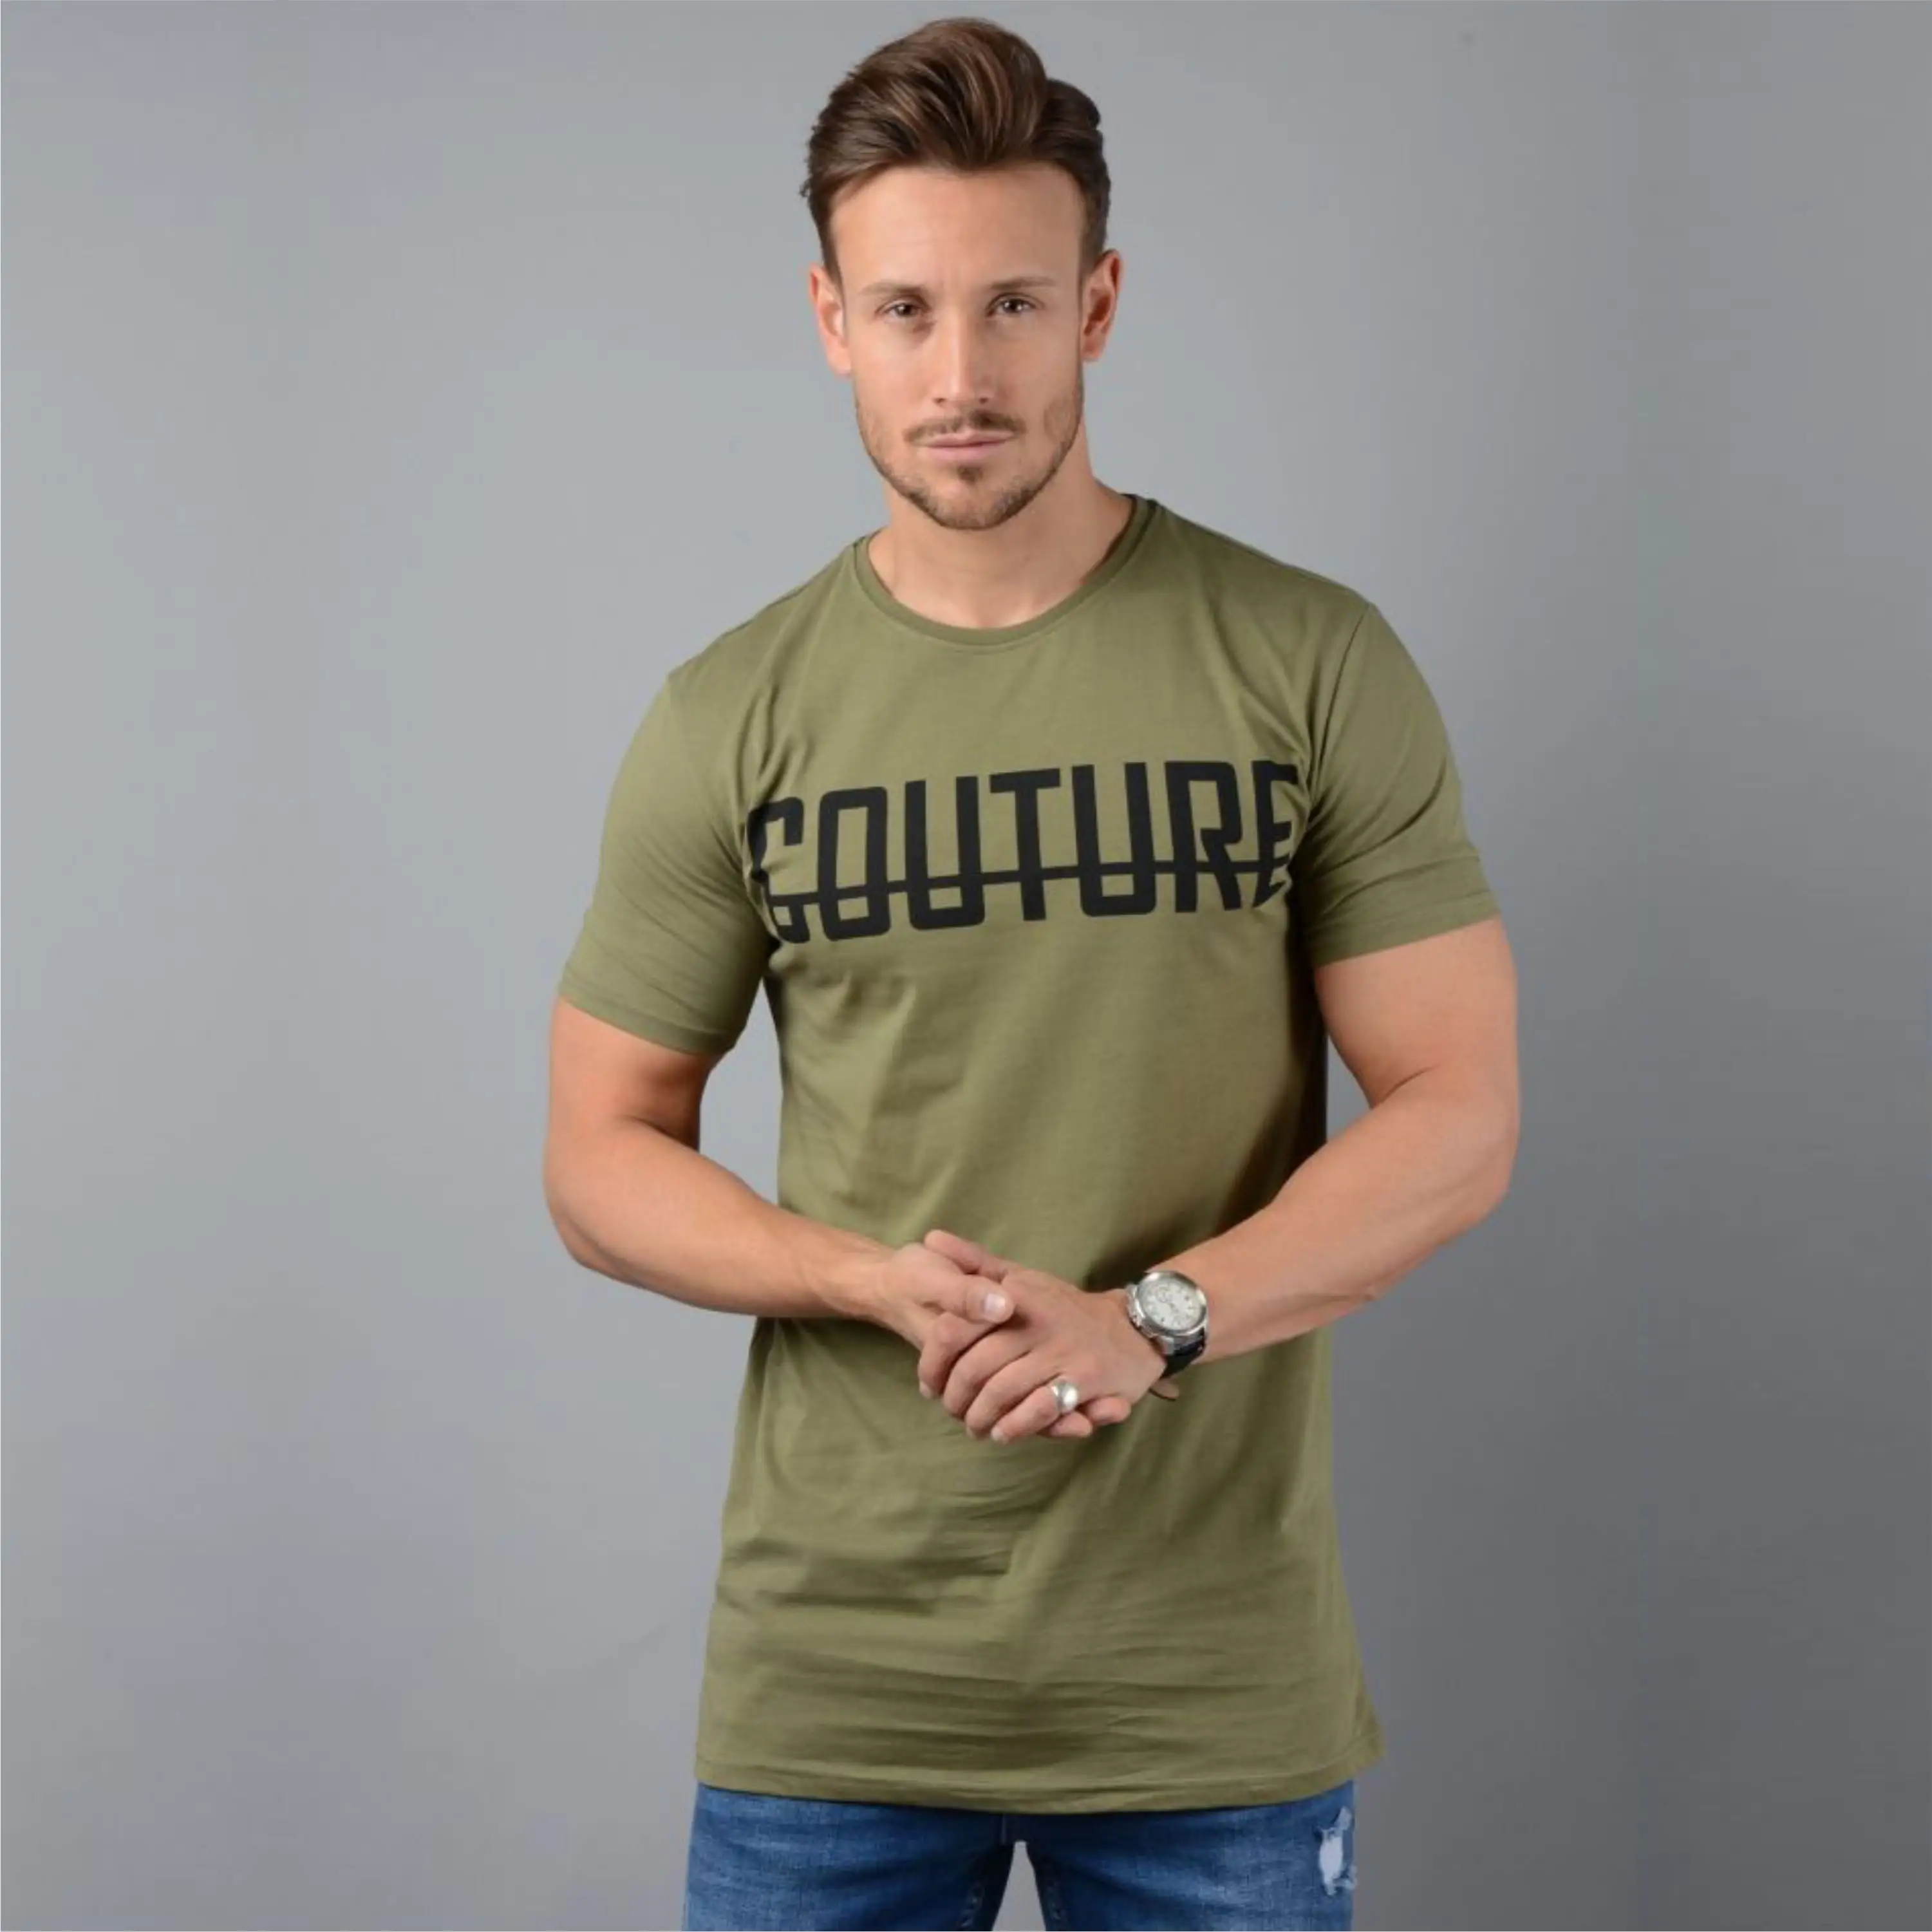 OPtech-Camiseta de algodón peinado fina para hombre, Camiseta ajustada de manga corta, color caqui y verde, 100% gsm, 200